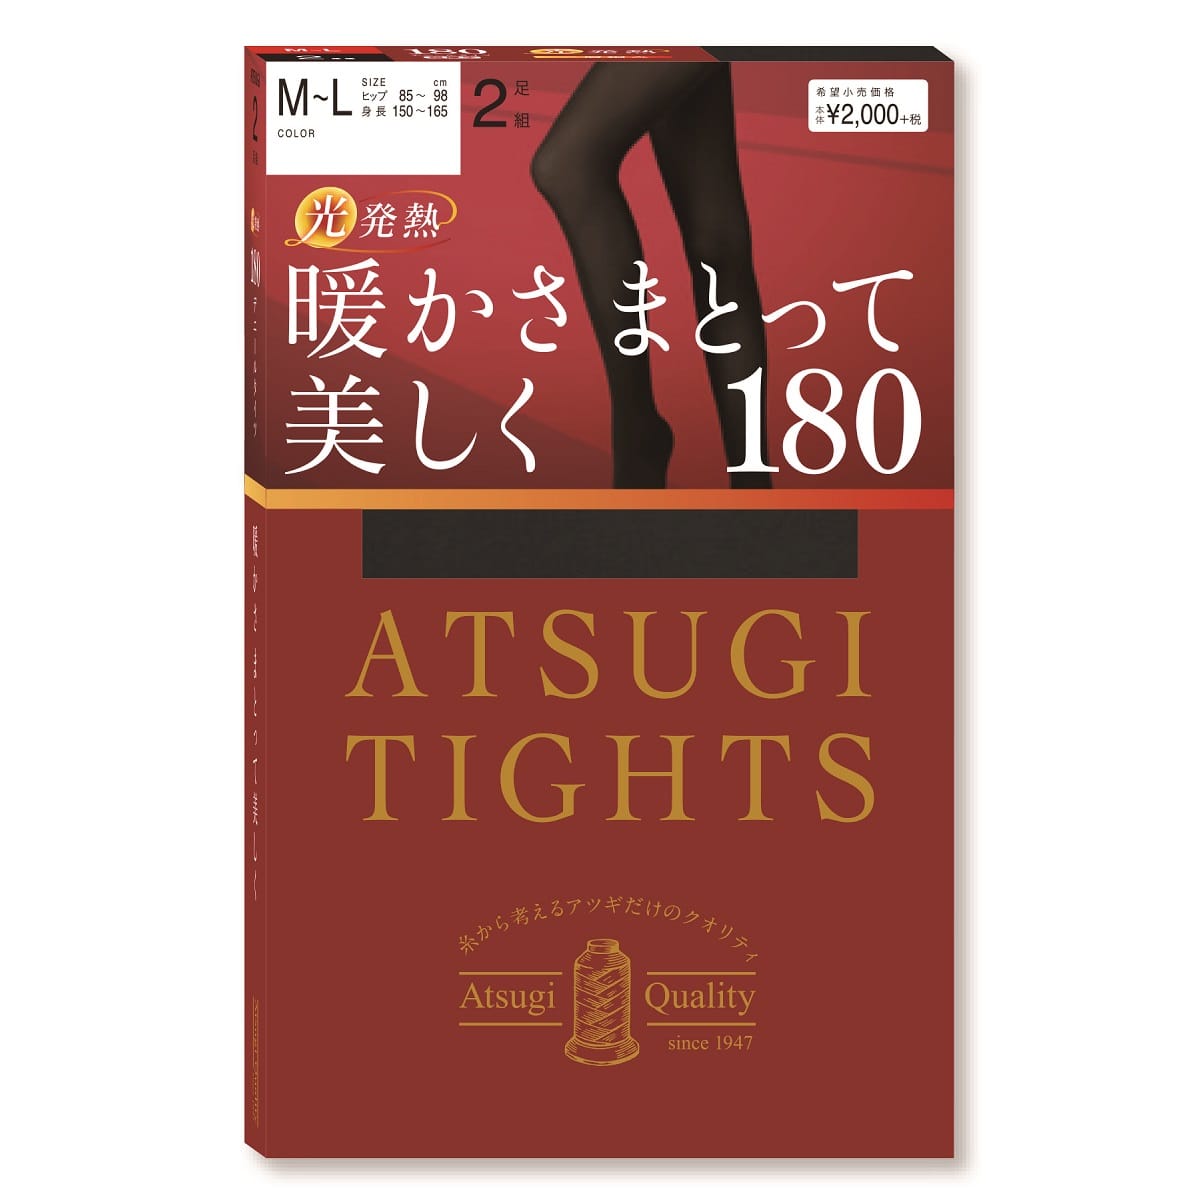 公式) ATSUGI TIGHTS / アツギタイツ 暖かさまっとて美しく 180デニールタイツ 2足組 | ATSUGI（アツギ）公式直販